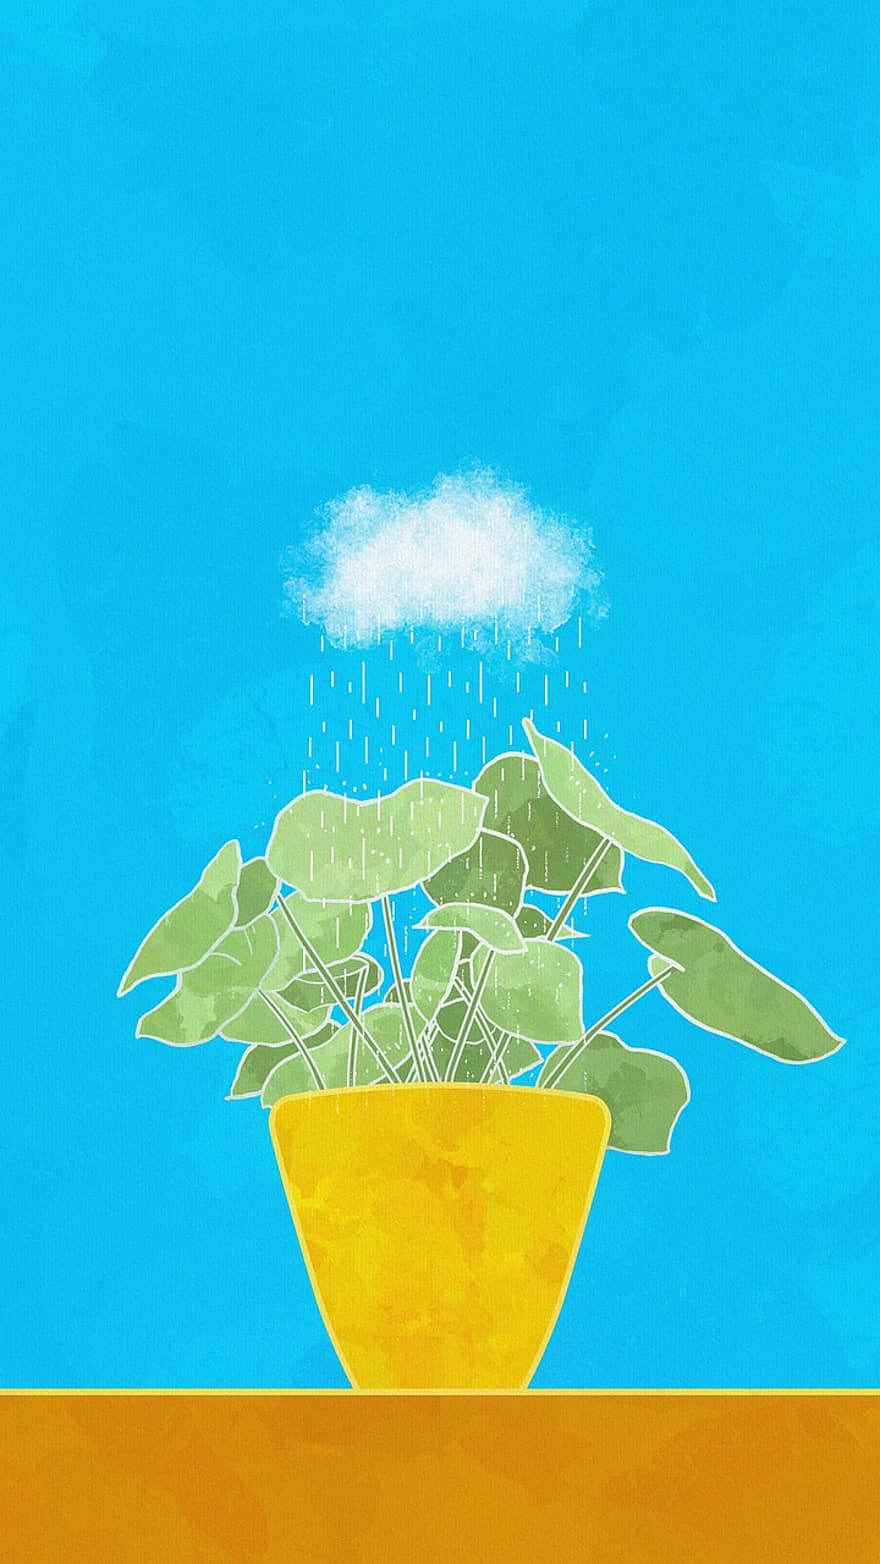 творческий подход, мышление, картина, карликовое дерево, дождь, облако, синее небо, синий дождь, Голубое мышление, синяя картина, синяя краска